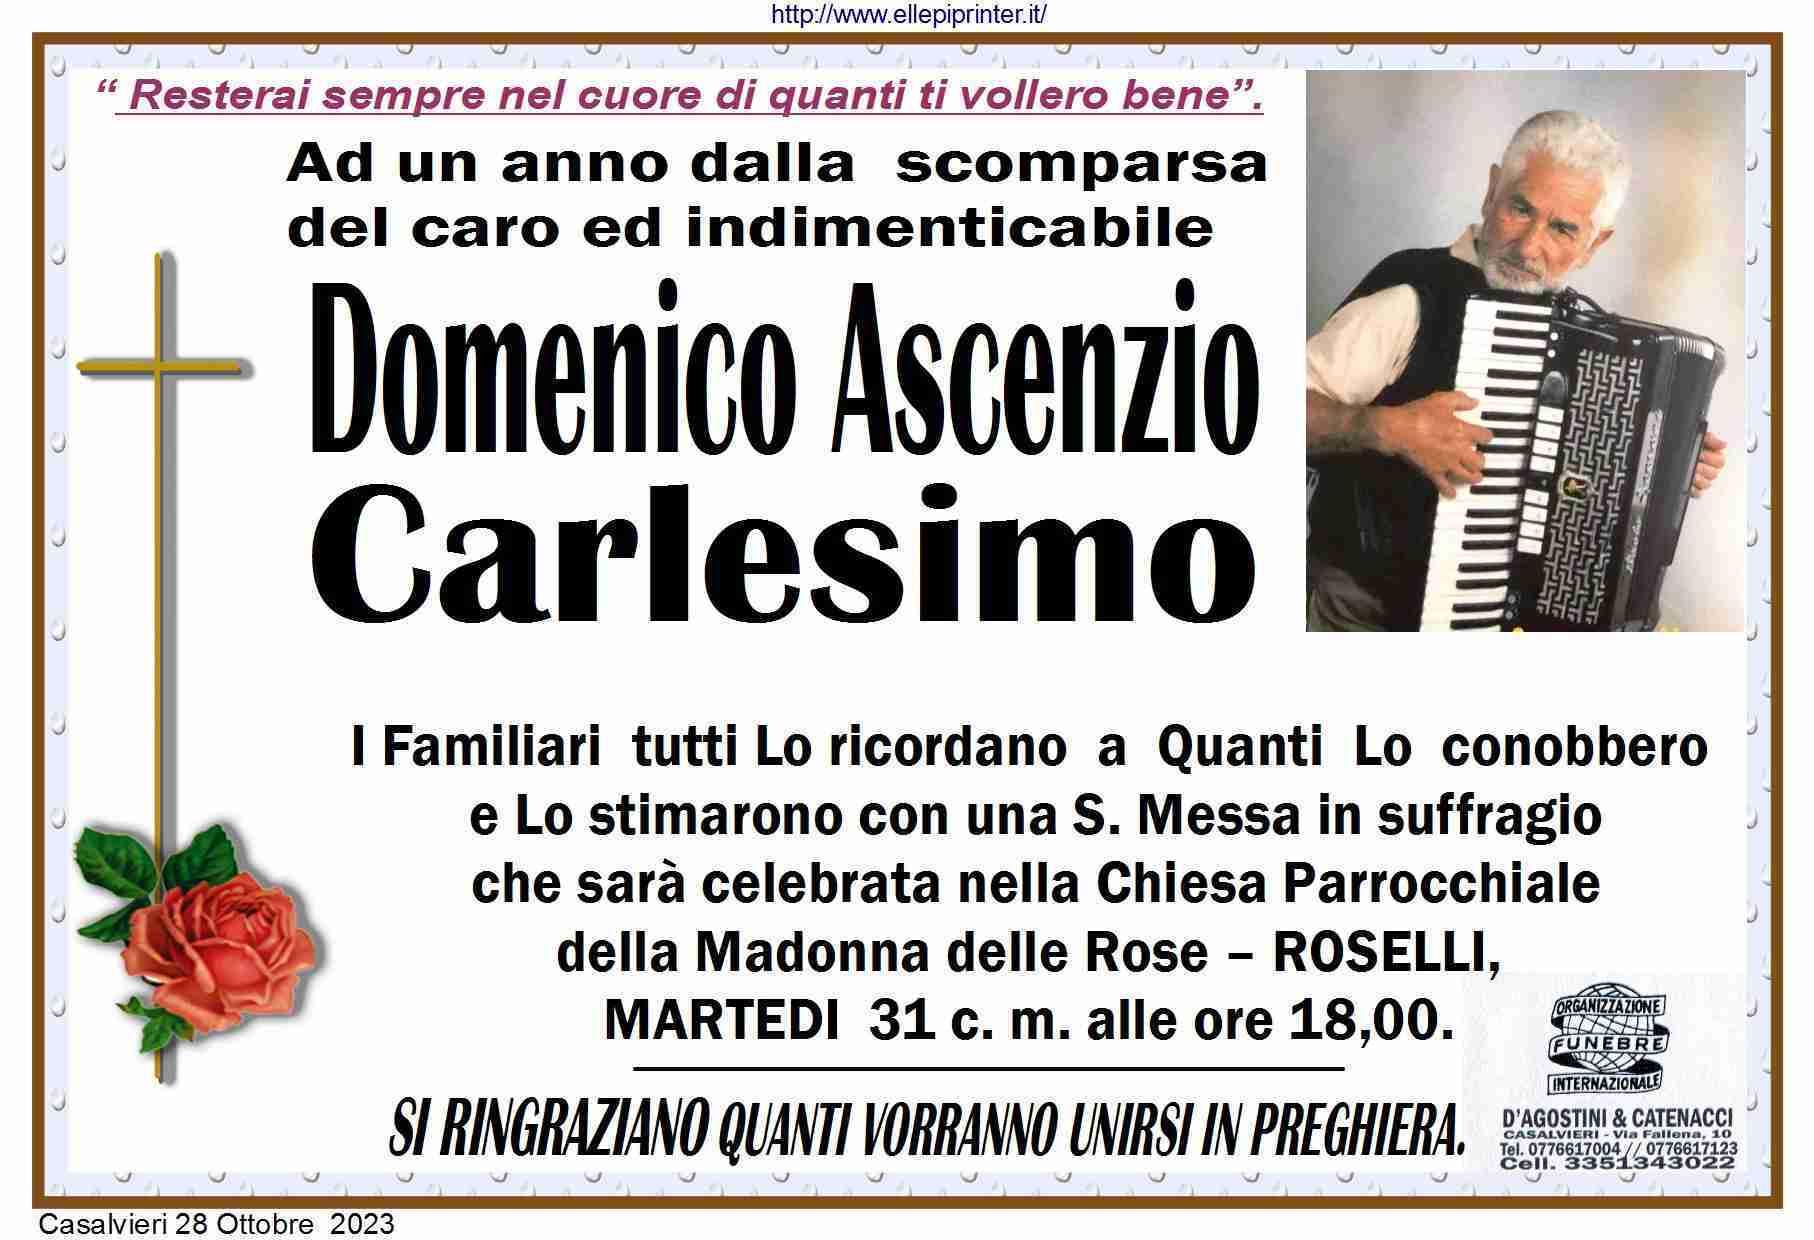 Domenico Ascenzio Carlesimo